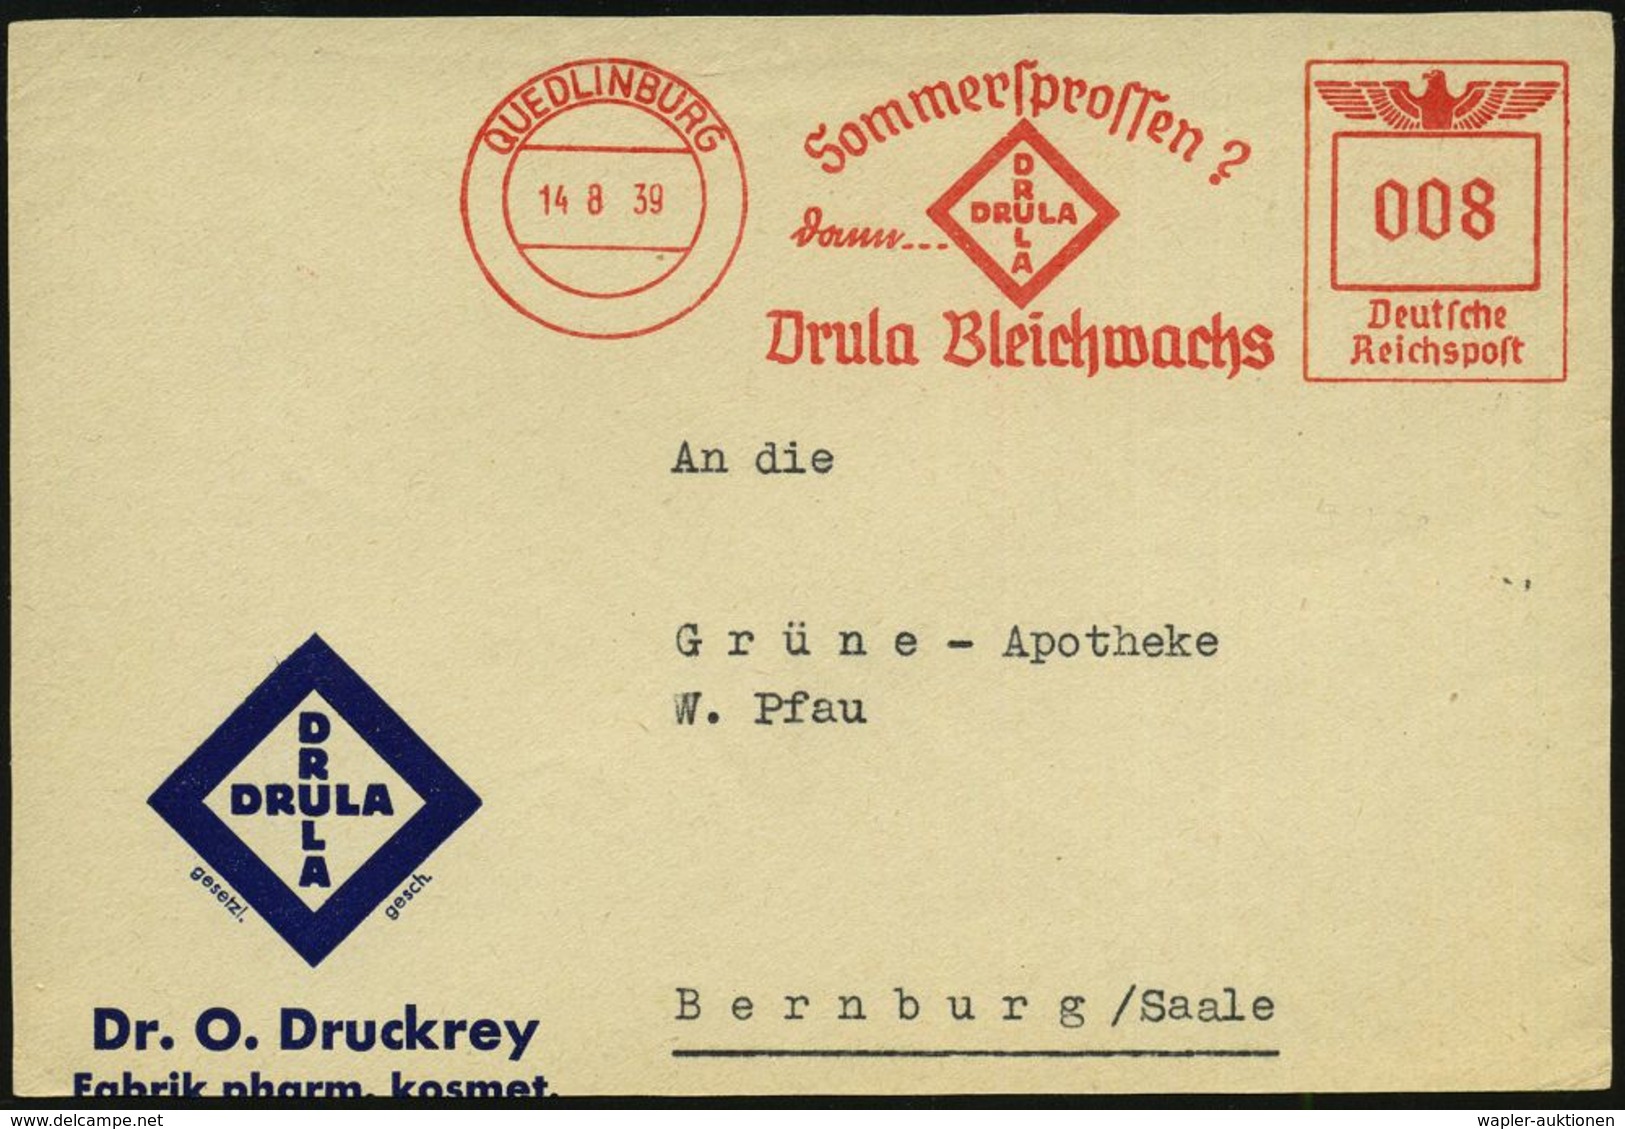 KOSMETIK / PARFÜM : QUEDLINBURG/ Sommersprossen?/ Dann.../ Drula Bleichwachs 1939 (14.8.) AFS (Logo) Auf Motivgl. Firmen - Pharmacy